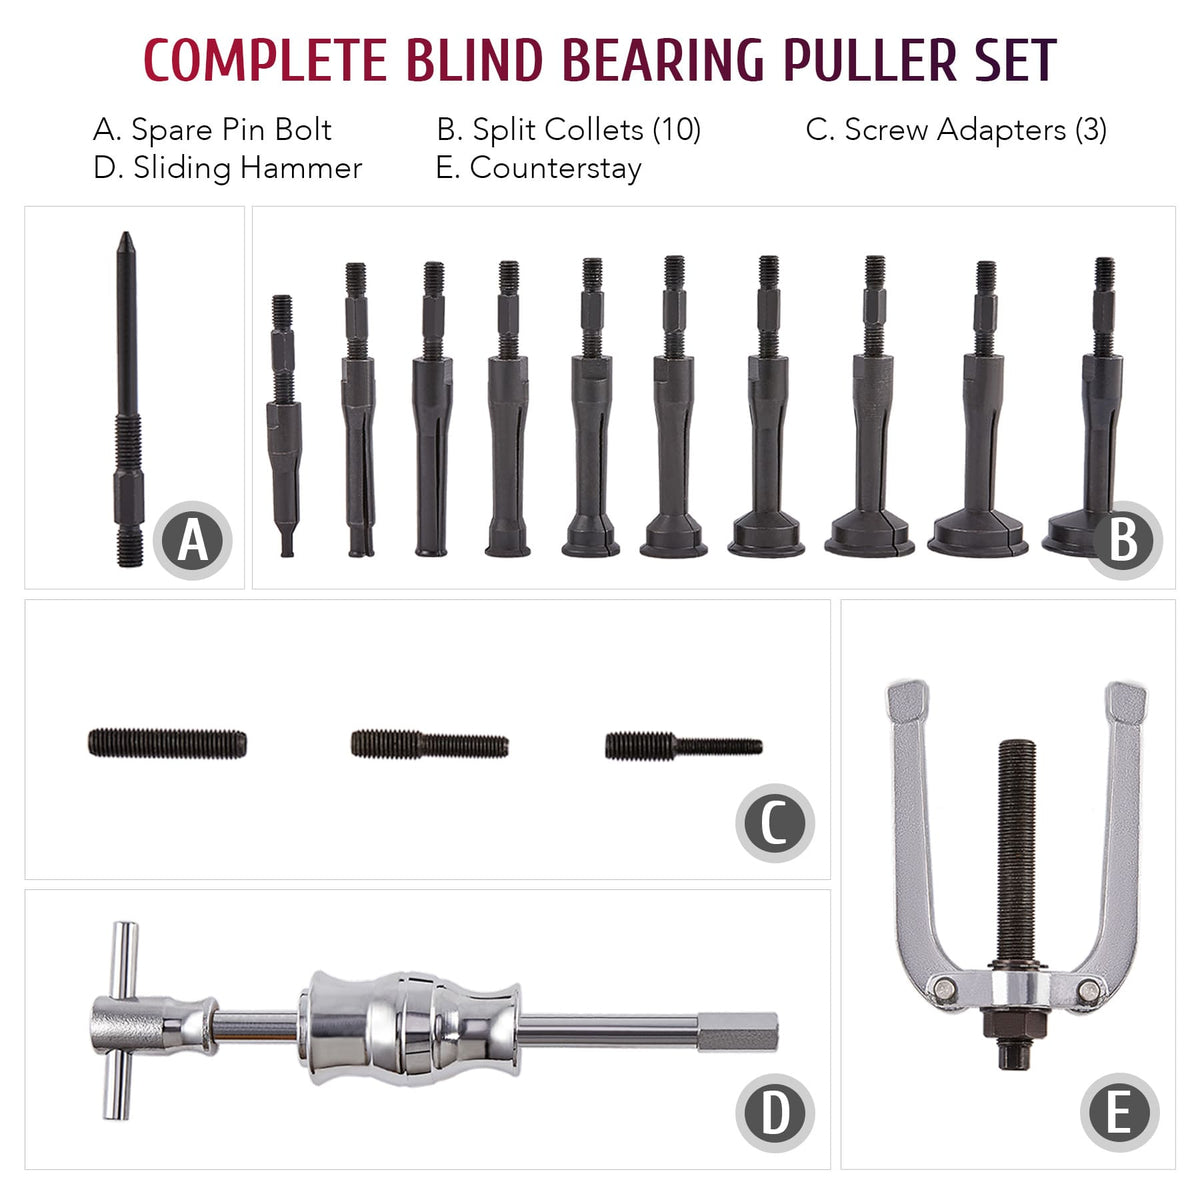 Complete Blind Bearing Puller Set